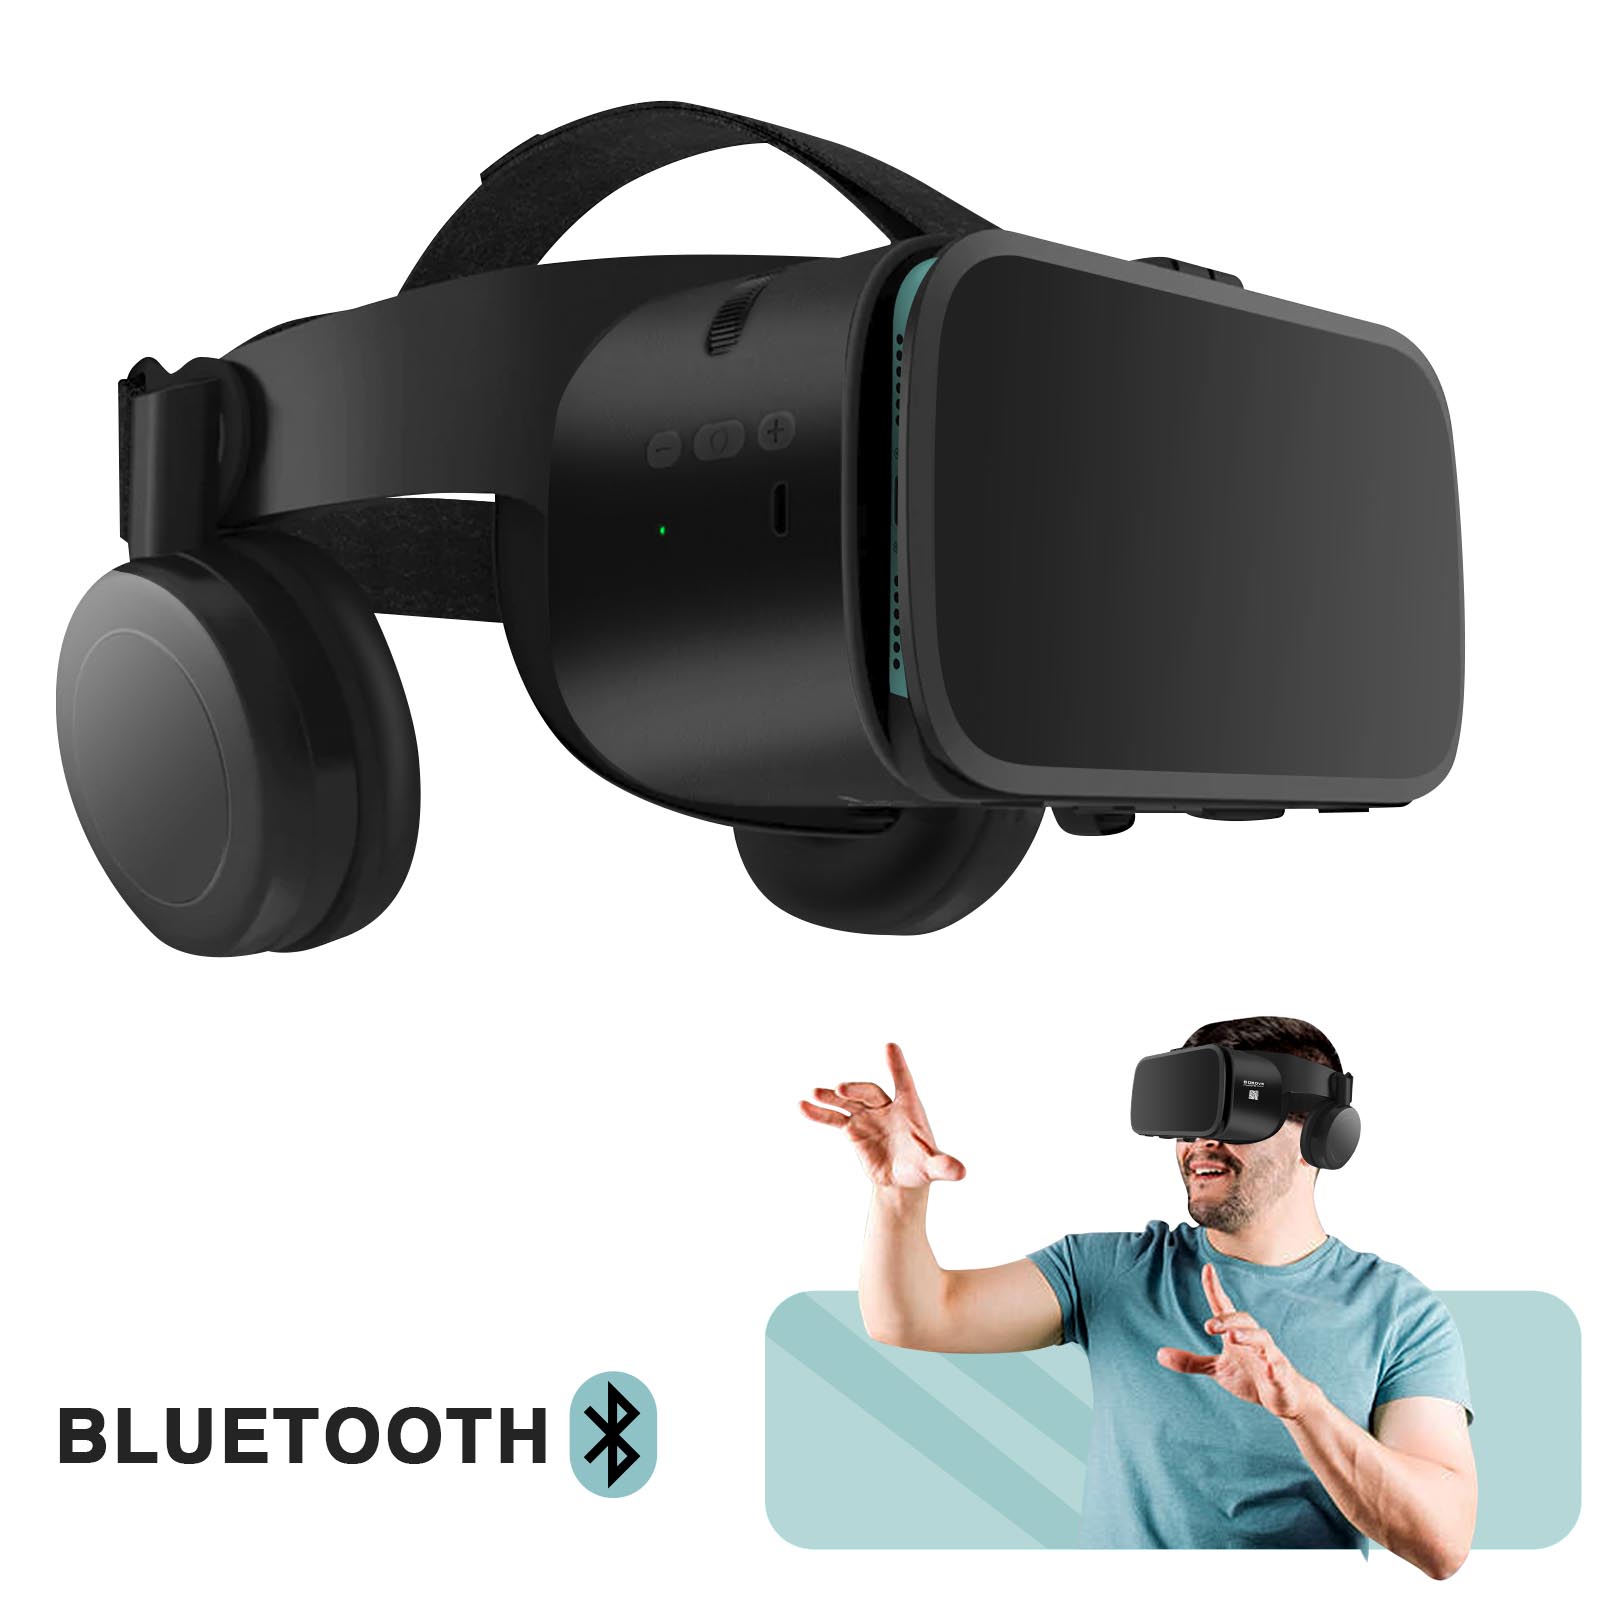 Samsung registra la marca Galaxy VR: ¿Nuevas gafas de Realidad Virtual a la  vista?